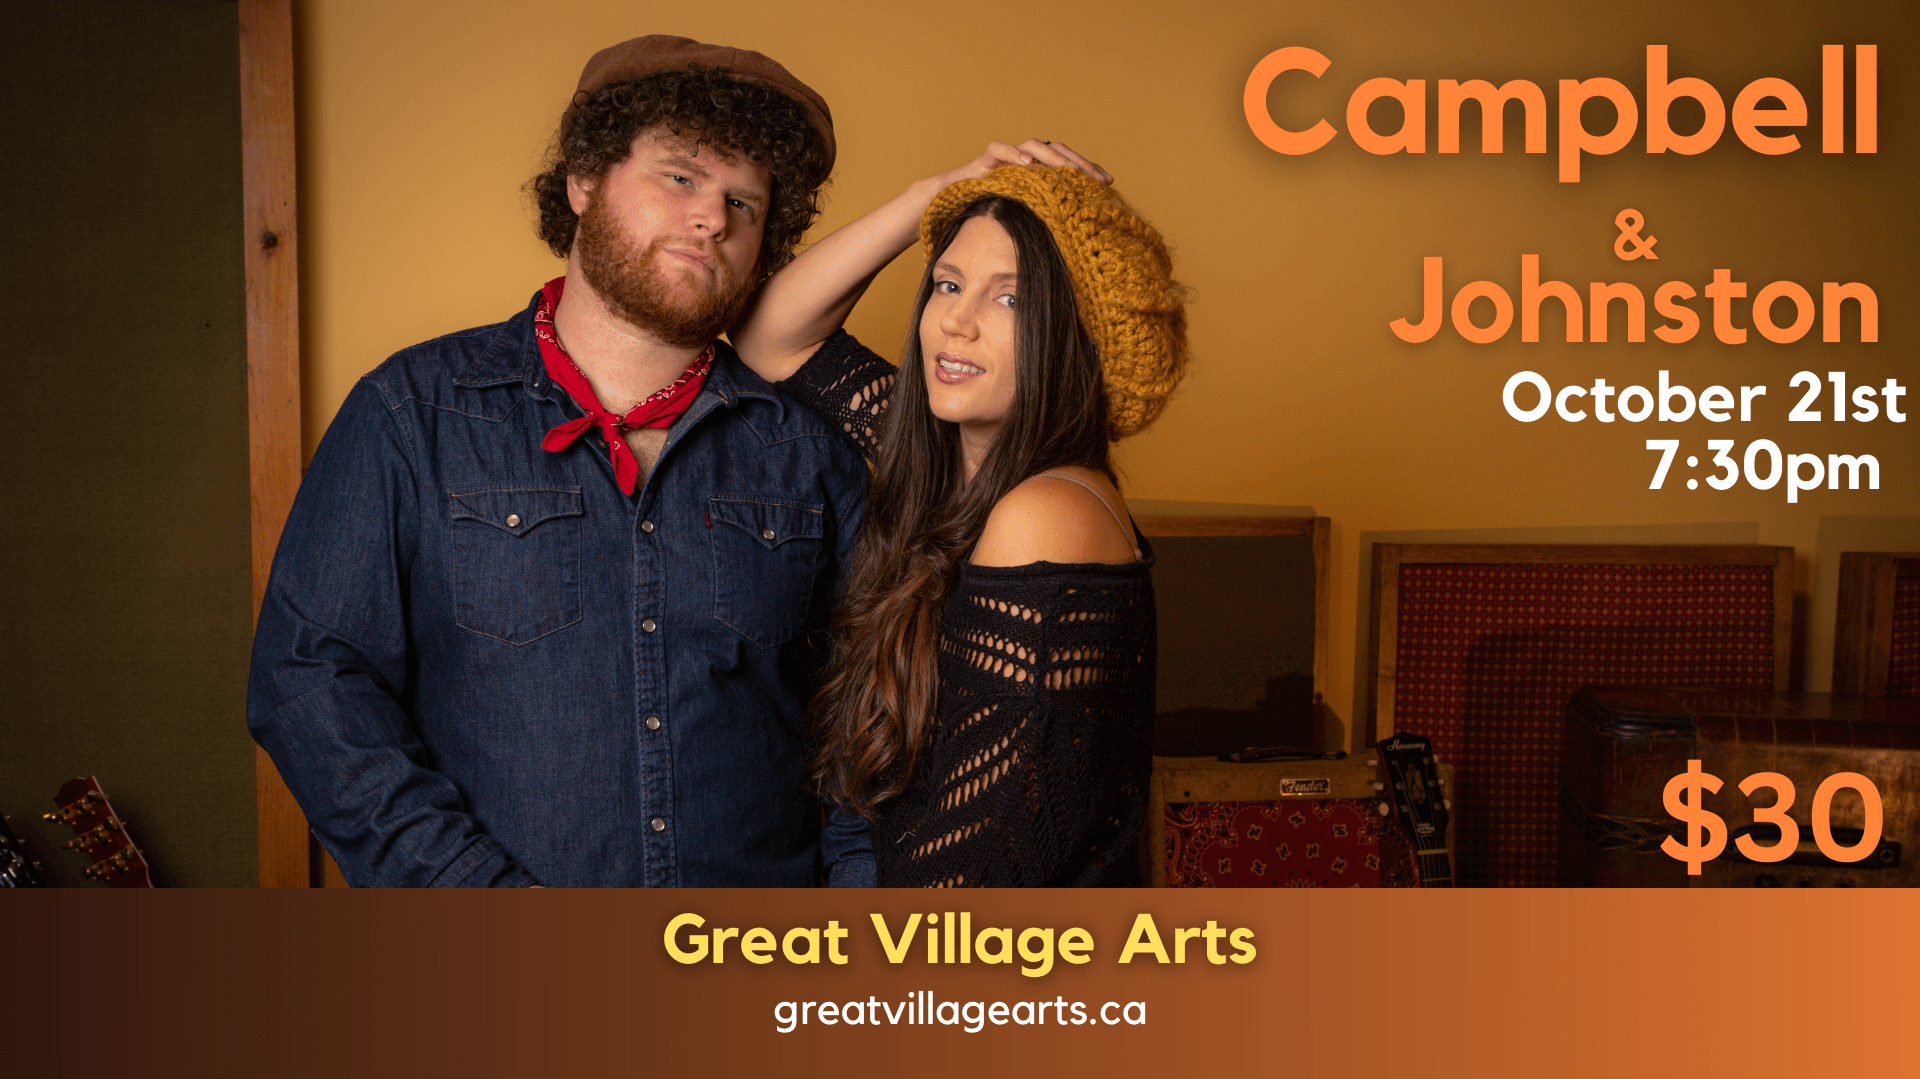 Campbell & Johnston - Great Village Arts - October 21